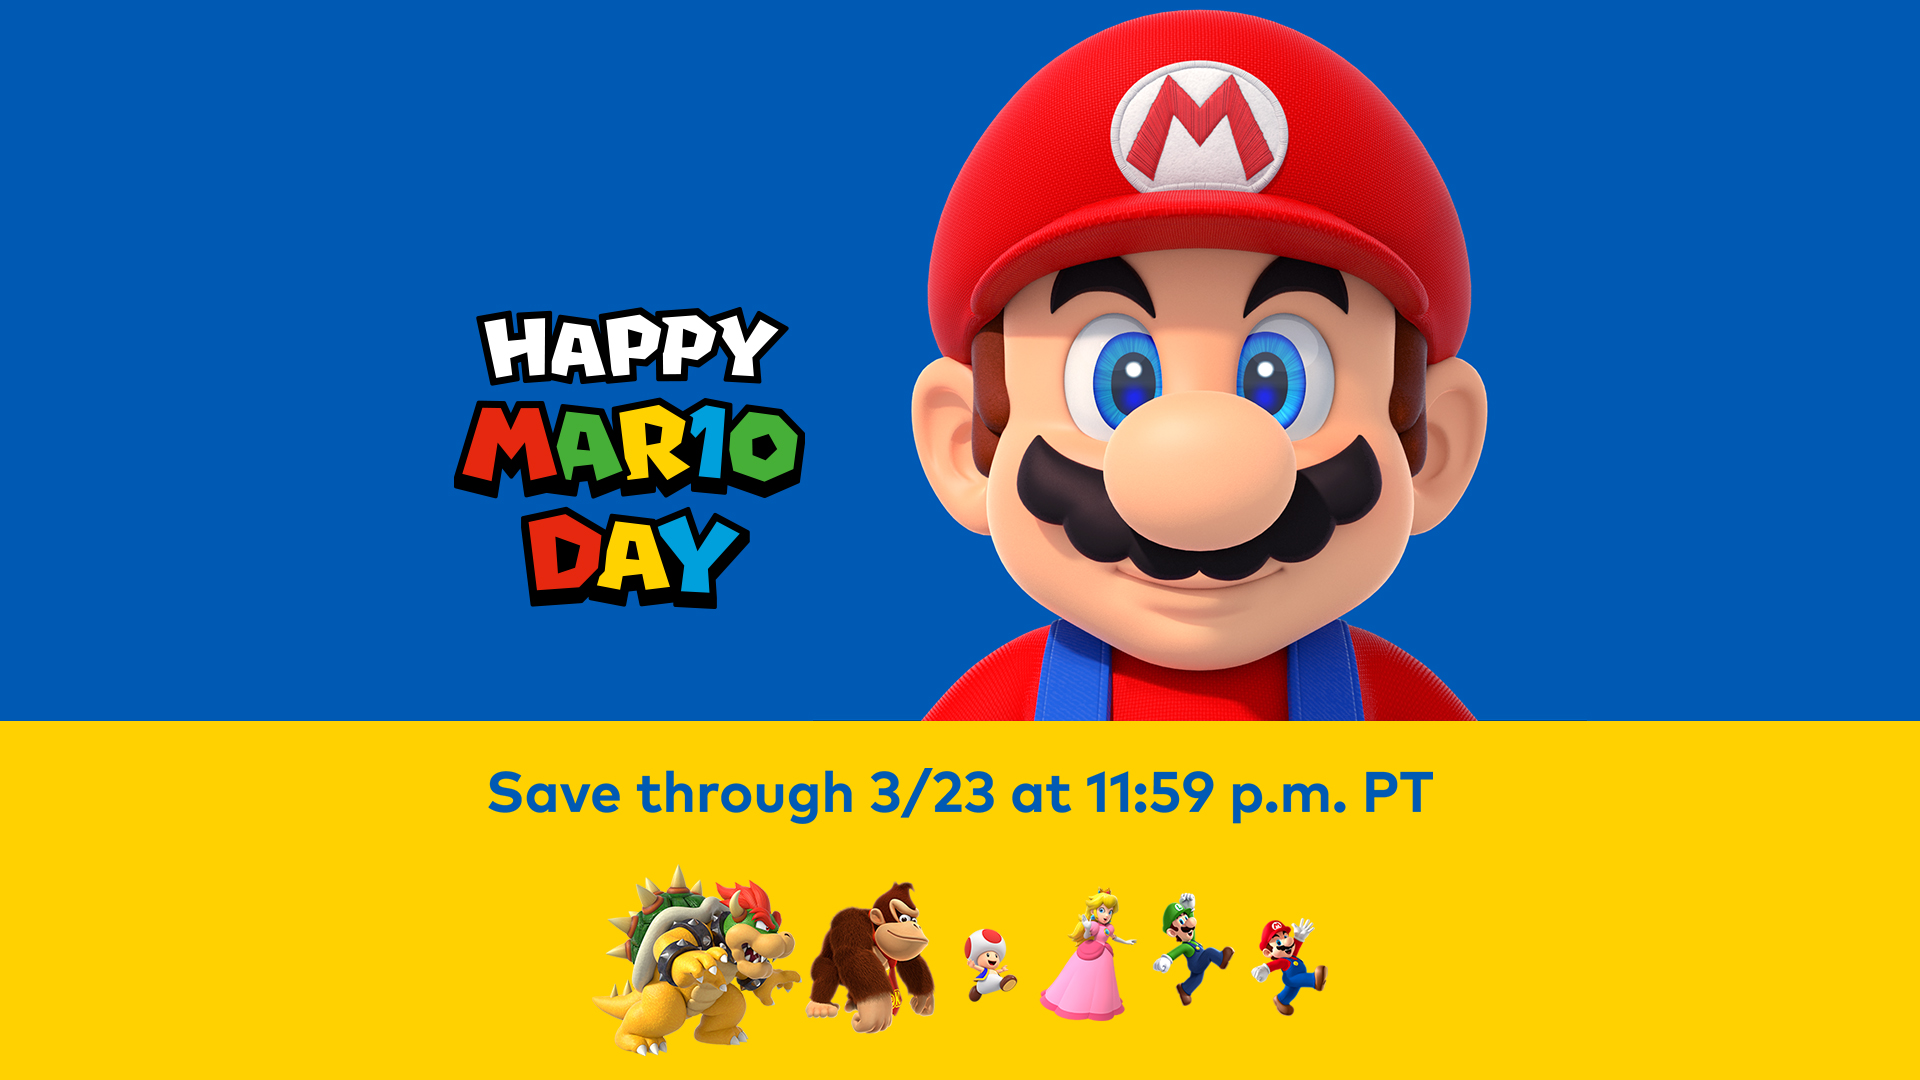 Nintendo anuncia atividades do MAR10 Day 2023